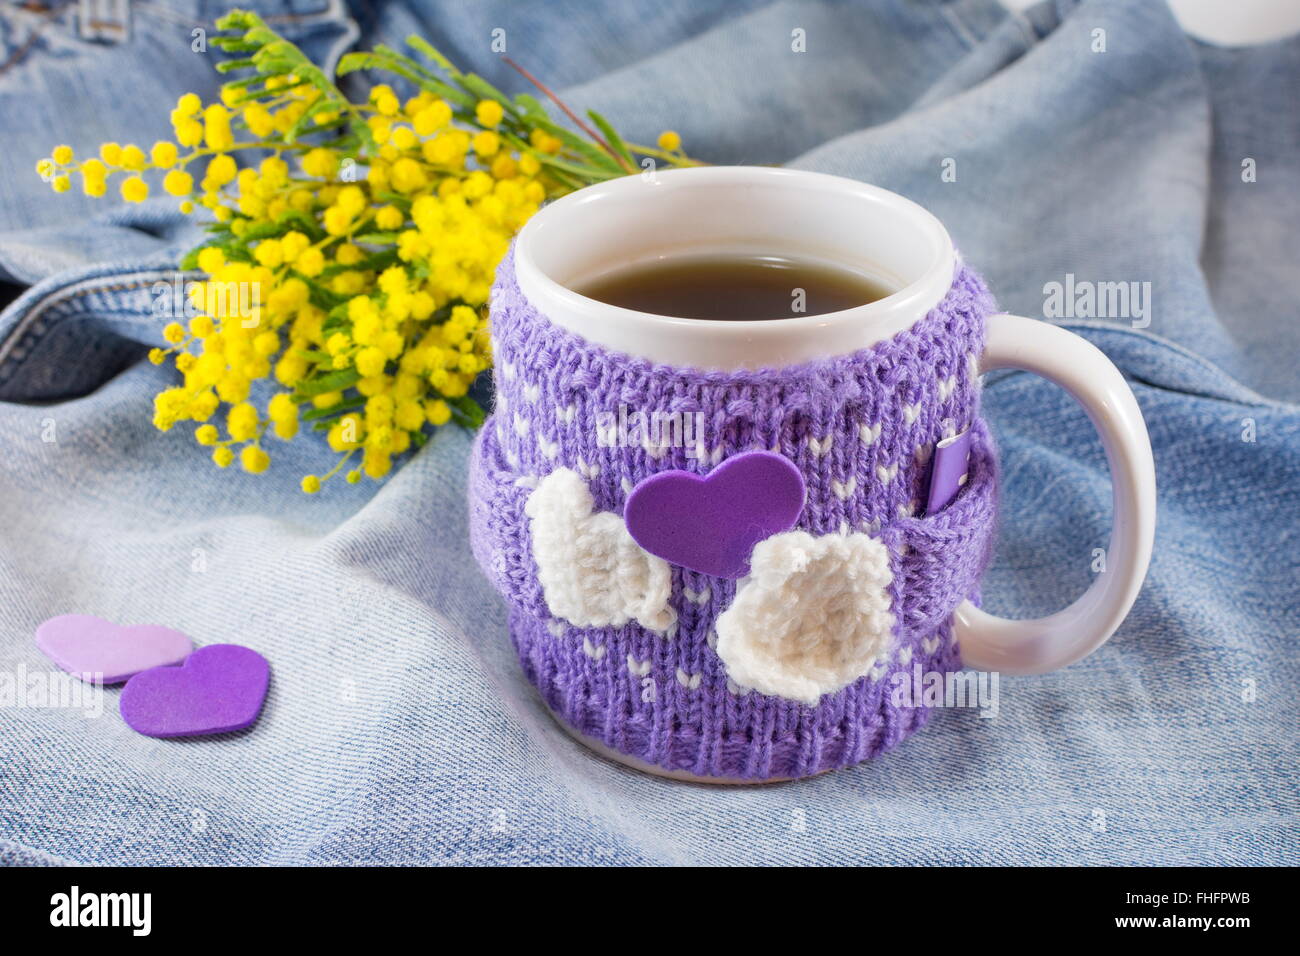 Tasse de thé d'hiver et mimosa fleurs sur fond bleu denim Banque D'Images